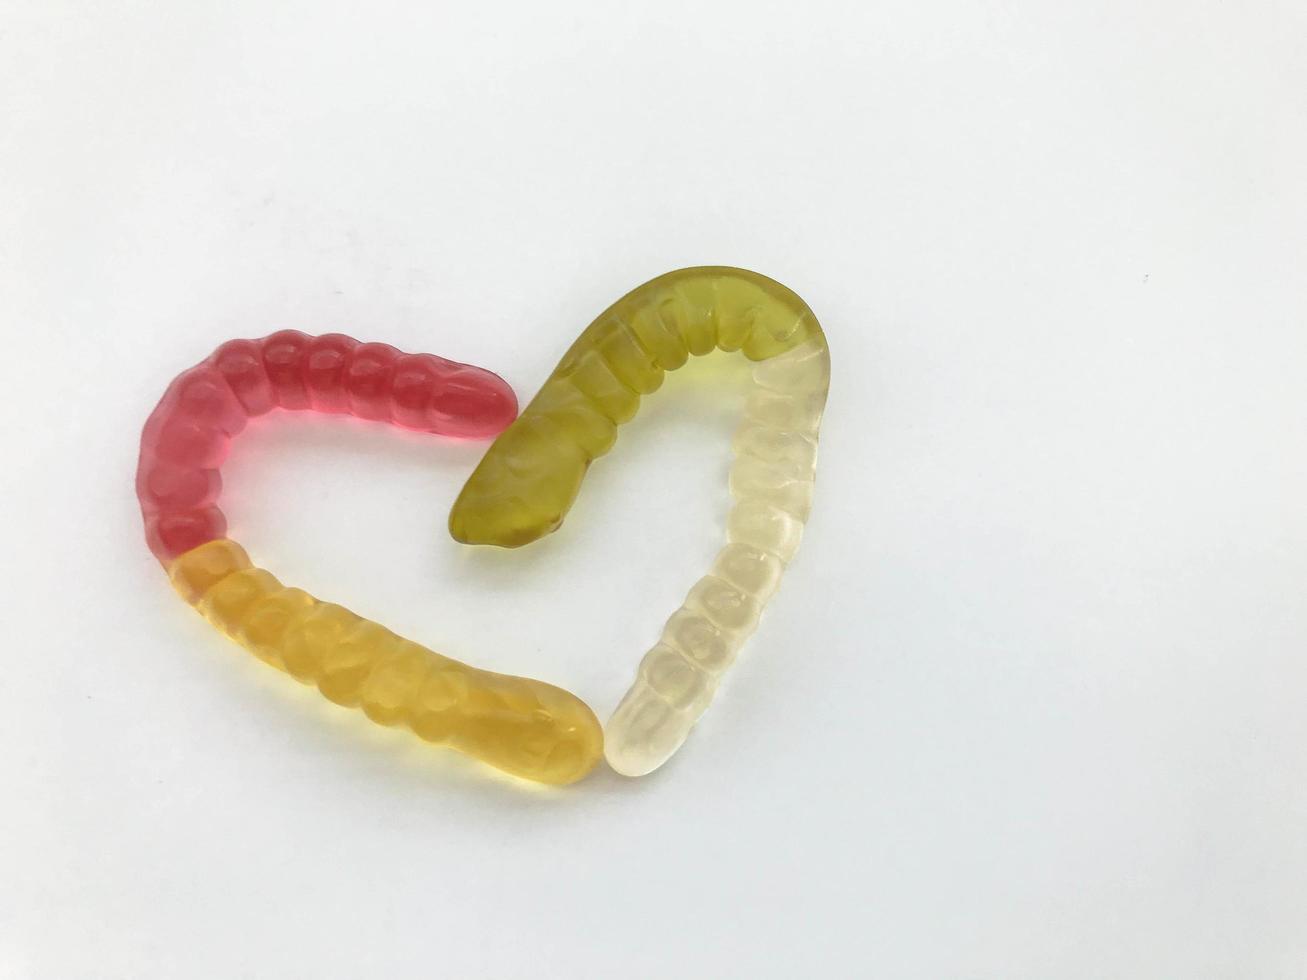 gusanos de mermelada. gusanos gelatinosos, multicolores entrelazados en forma de corazón. gusano amarillo-rojo y verde-blanco sobre un fondo blanco mate. delicioso y apetitoso postre foto